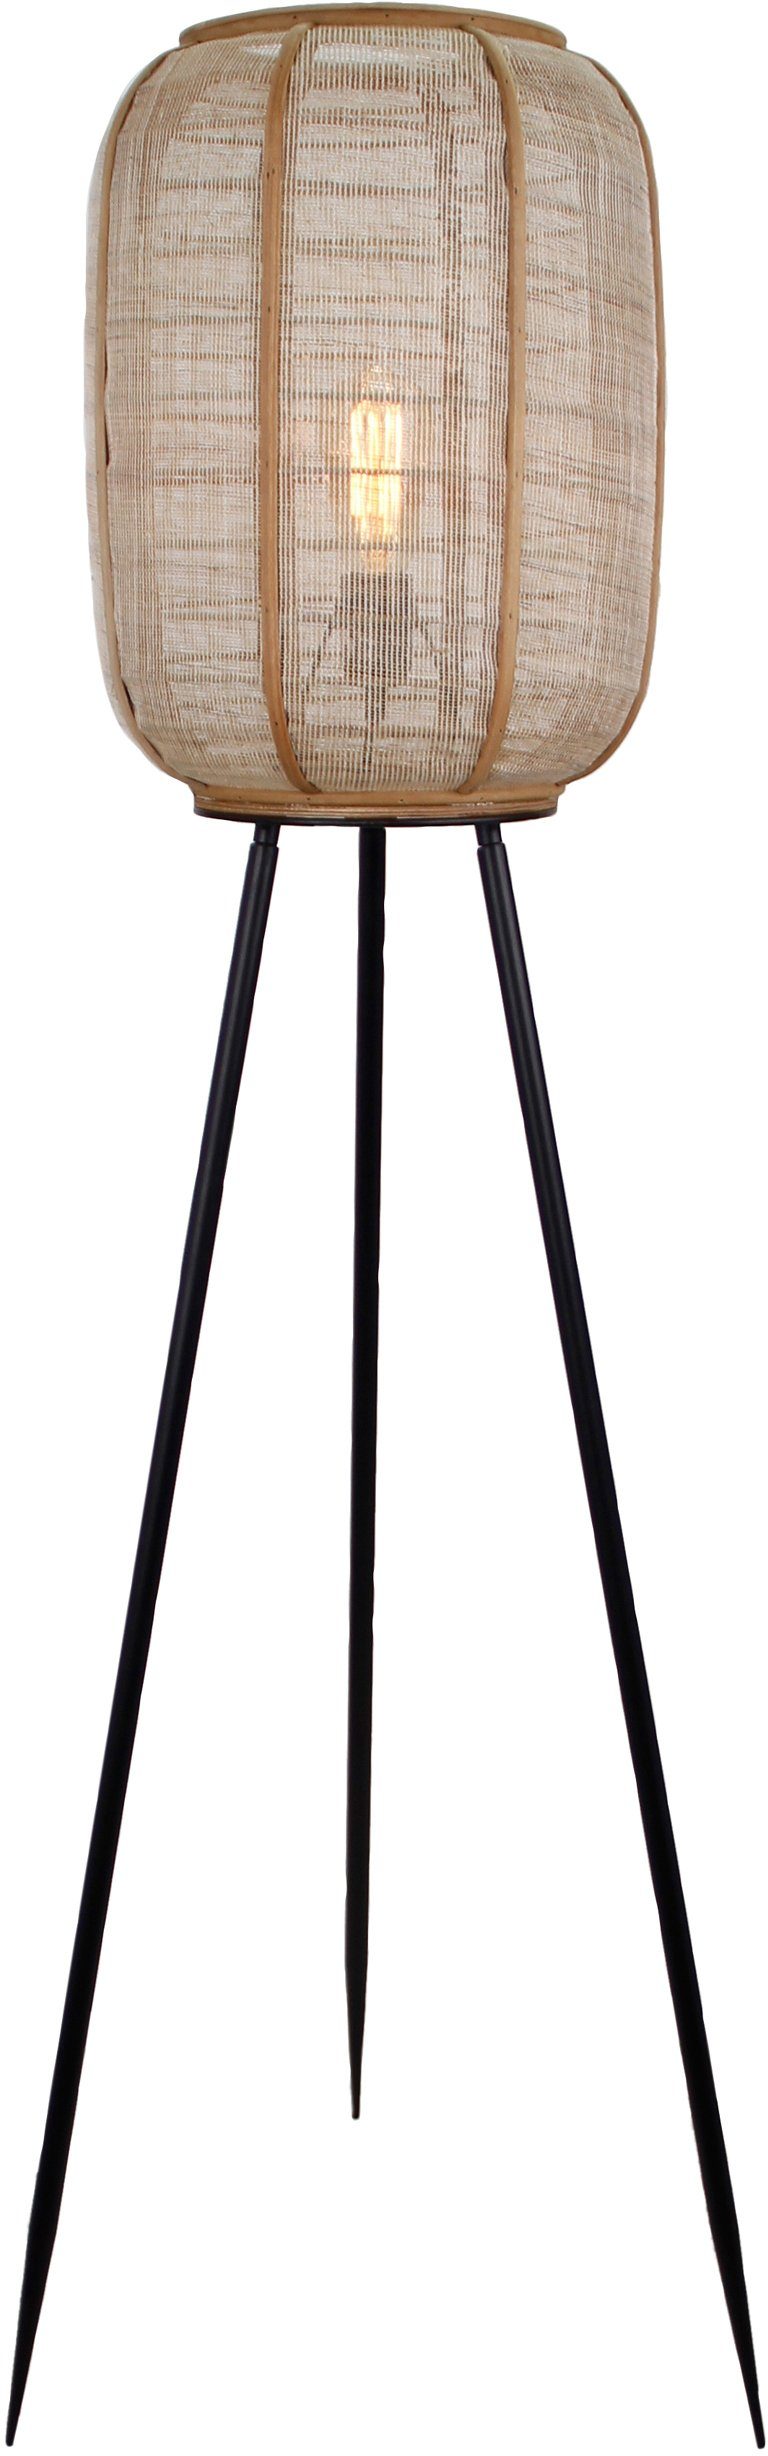 Home affaire Stehlampe Rouez, mit dreibeinige Holz Schirm aus und Standleuchte Höhe, 1,34m Leuchtmittel, Textil ohne